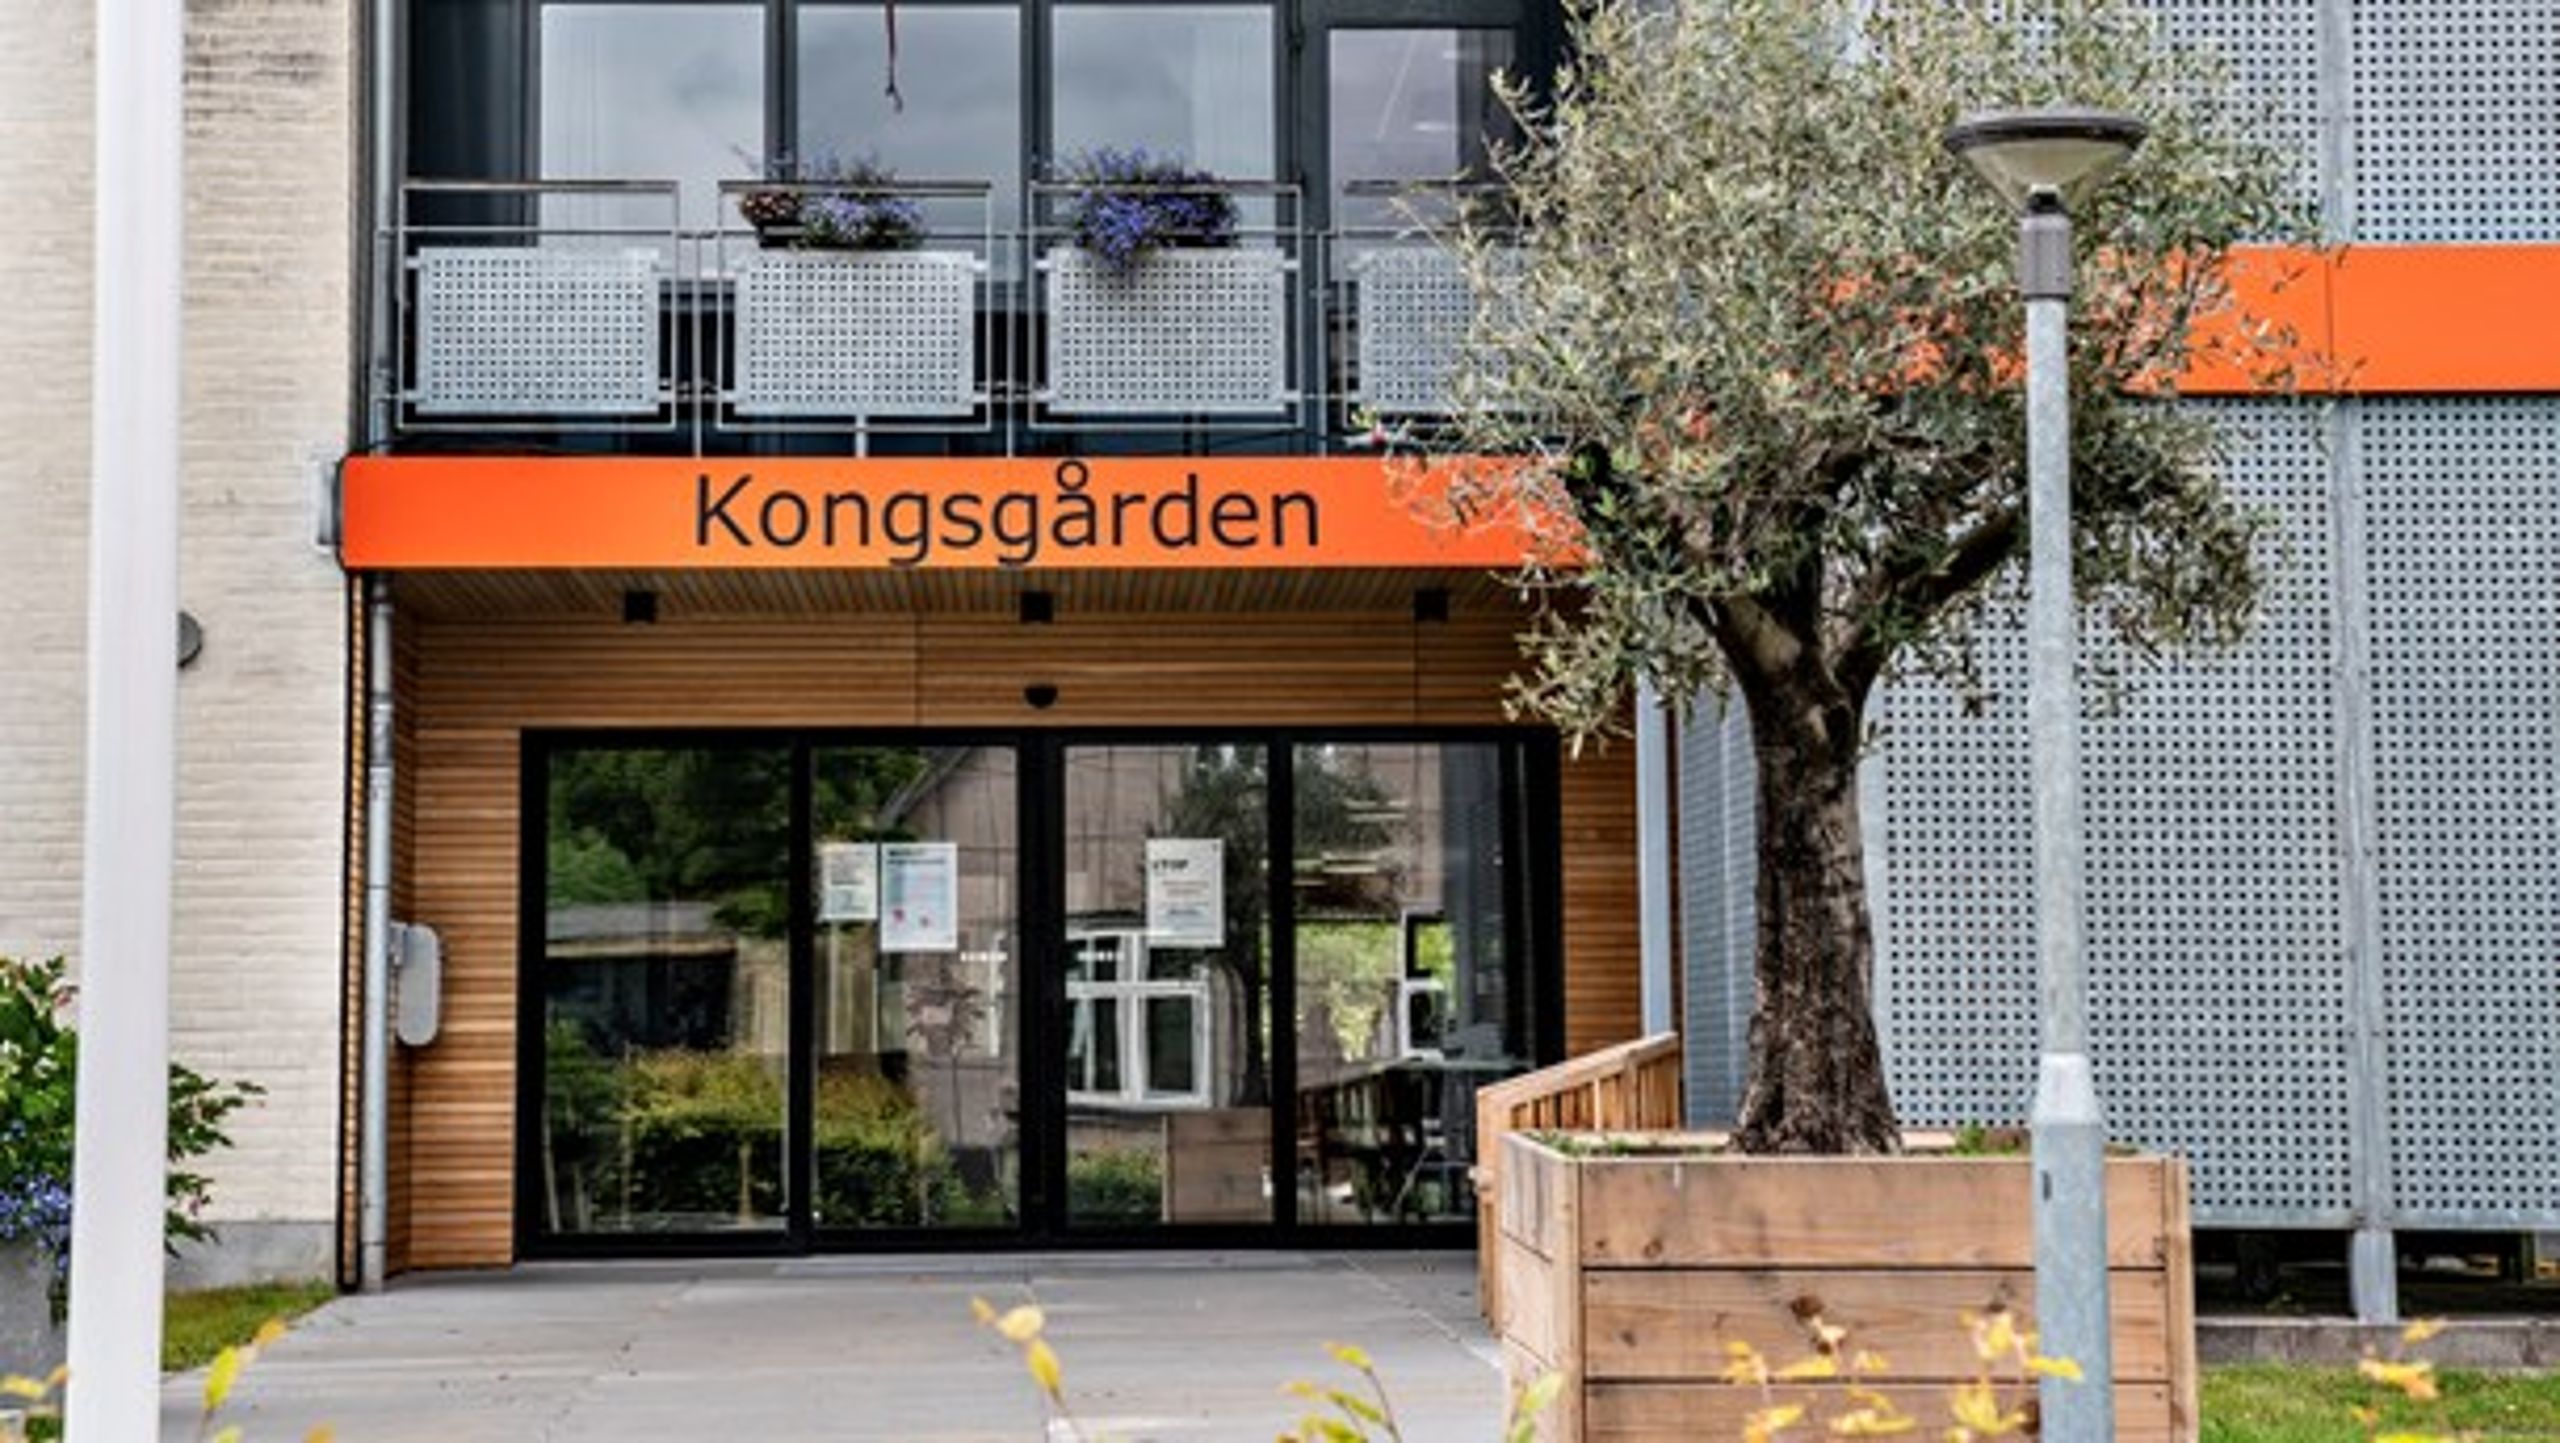 TV 2-dokumentaren 'Plejehjemmene bag facaden' afdækkede, at en dement borger på 90 år blev udsat for omsorgssvigt på Kongsgården i&nbsp;Aarhus.